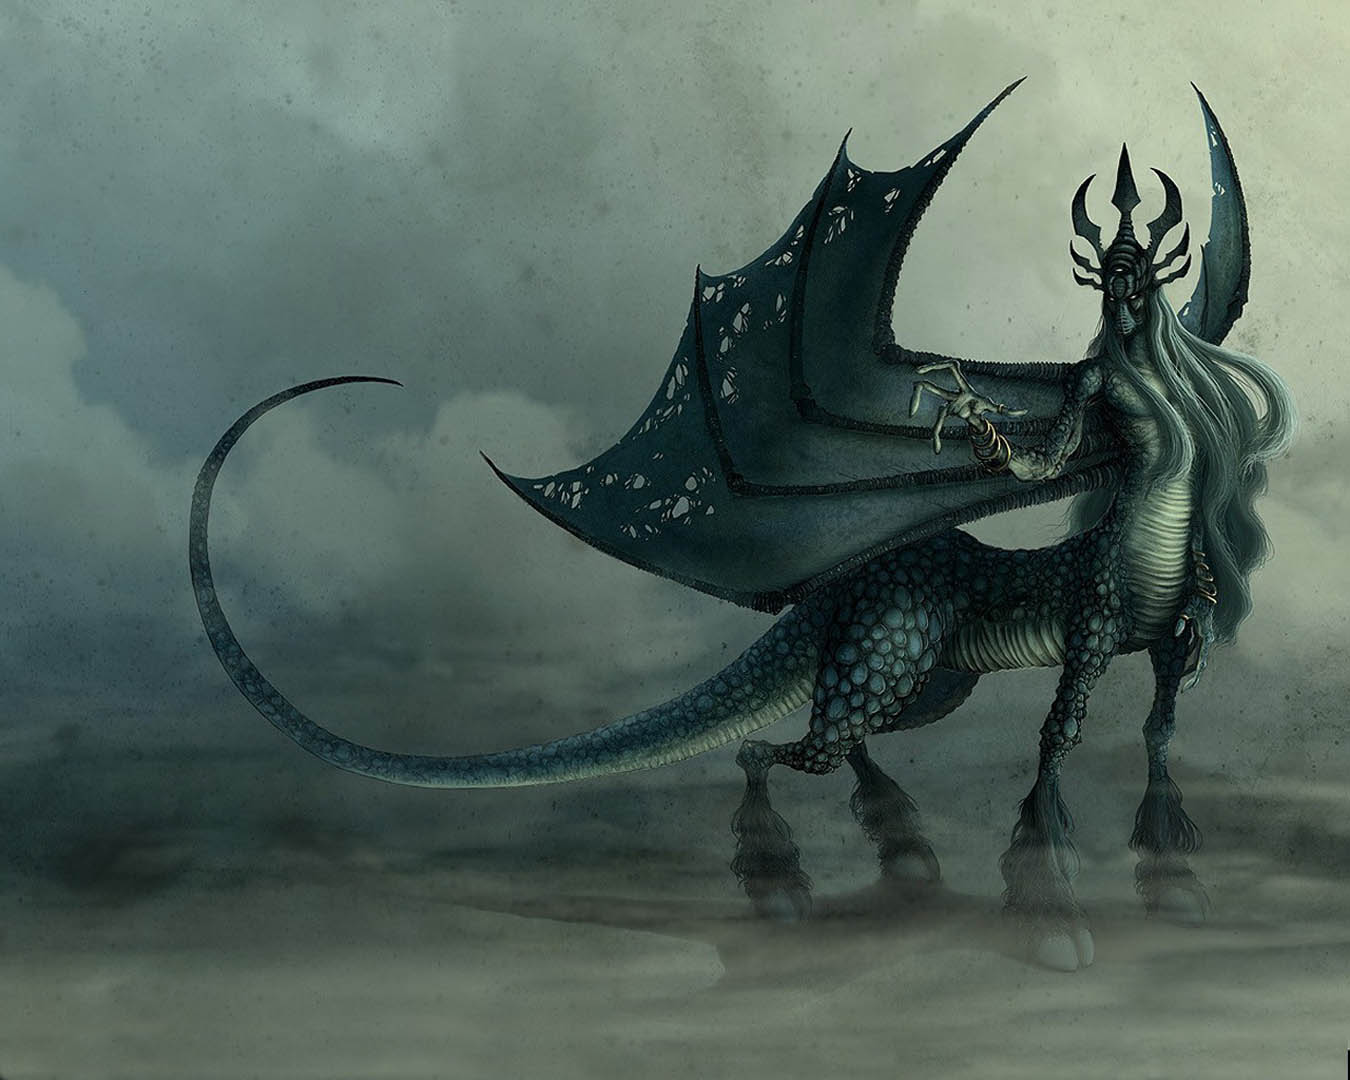 Demonic Centaur Monsters Wallpaper Image